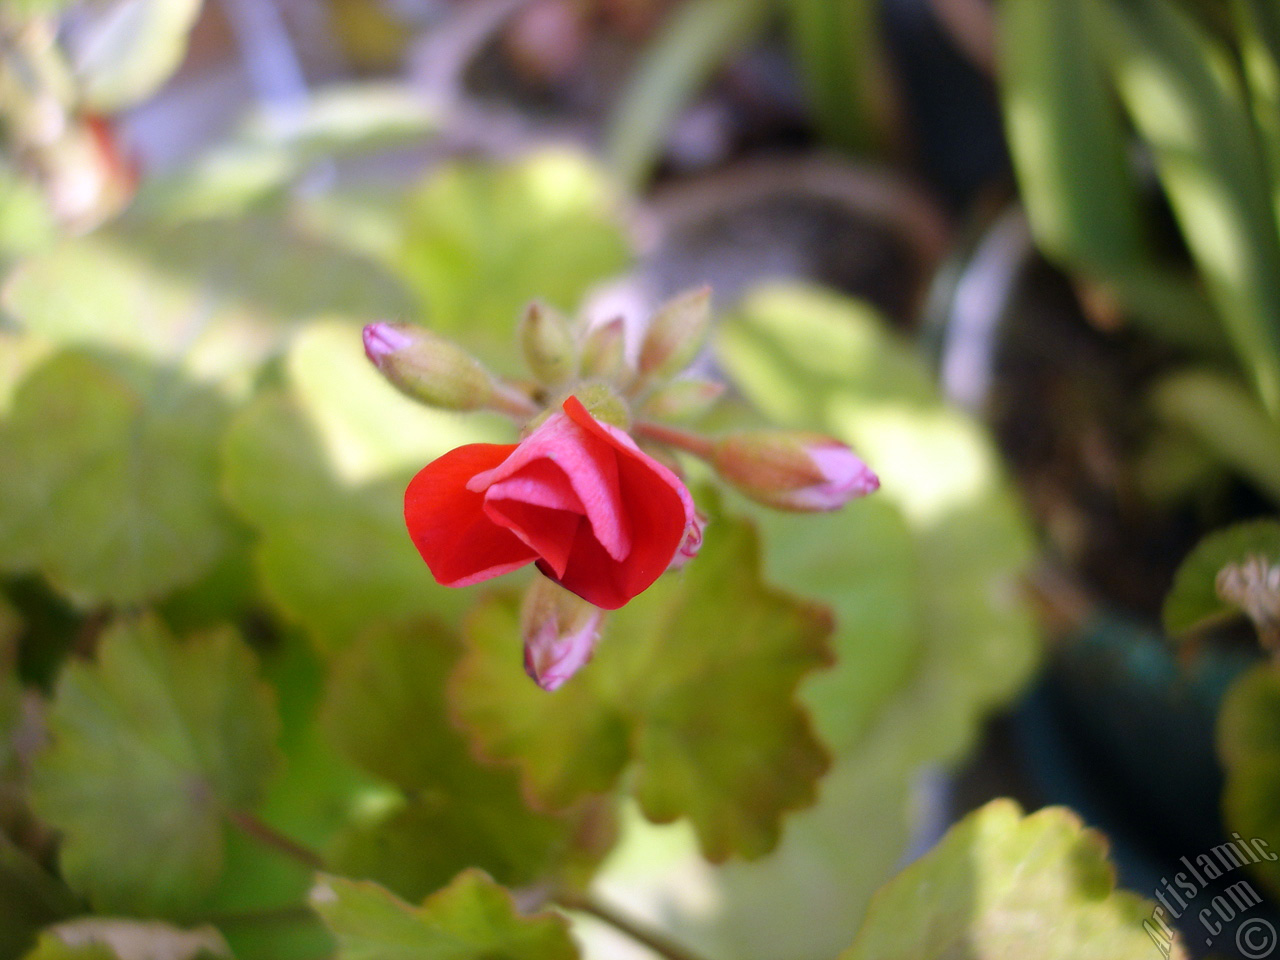 Red Colored Pelargonia -Geranium- flower.
